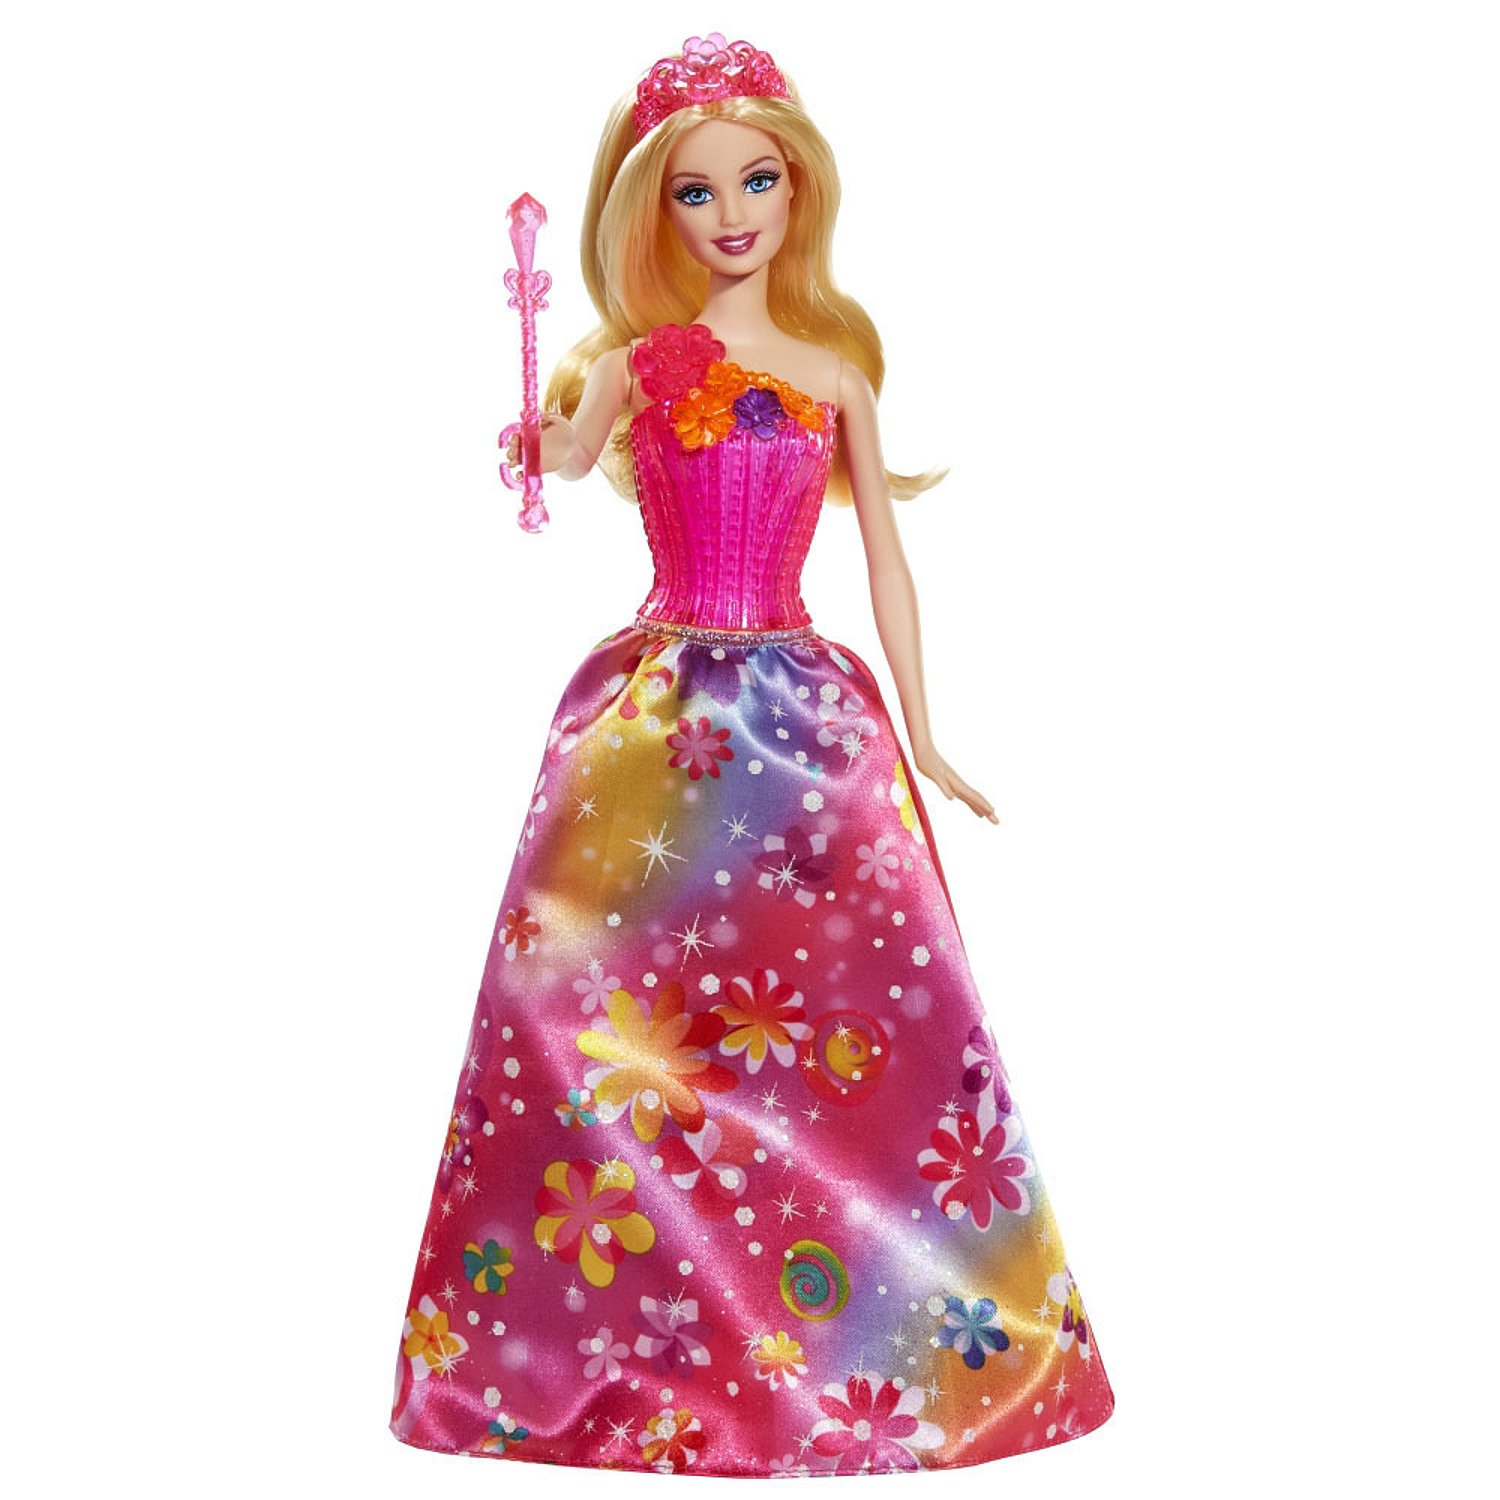 Kukla Barbie Iz Serii Potajnaya Dver V Assortimente Kupit V Internet Magazine V Moskve I Rossii Otzyvy Cena Foto